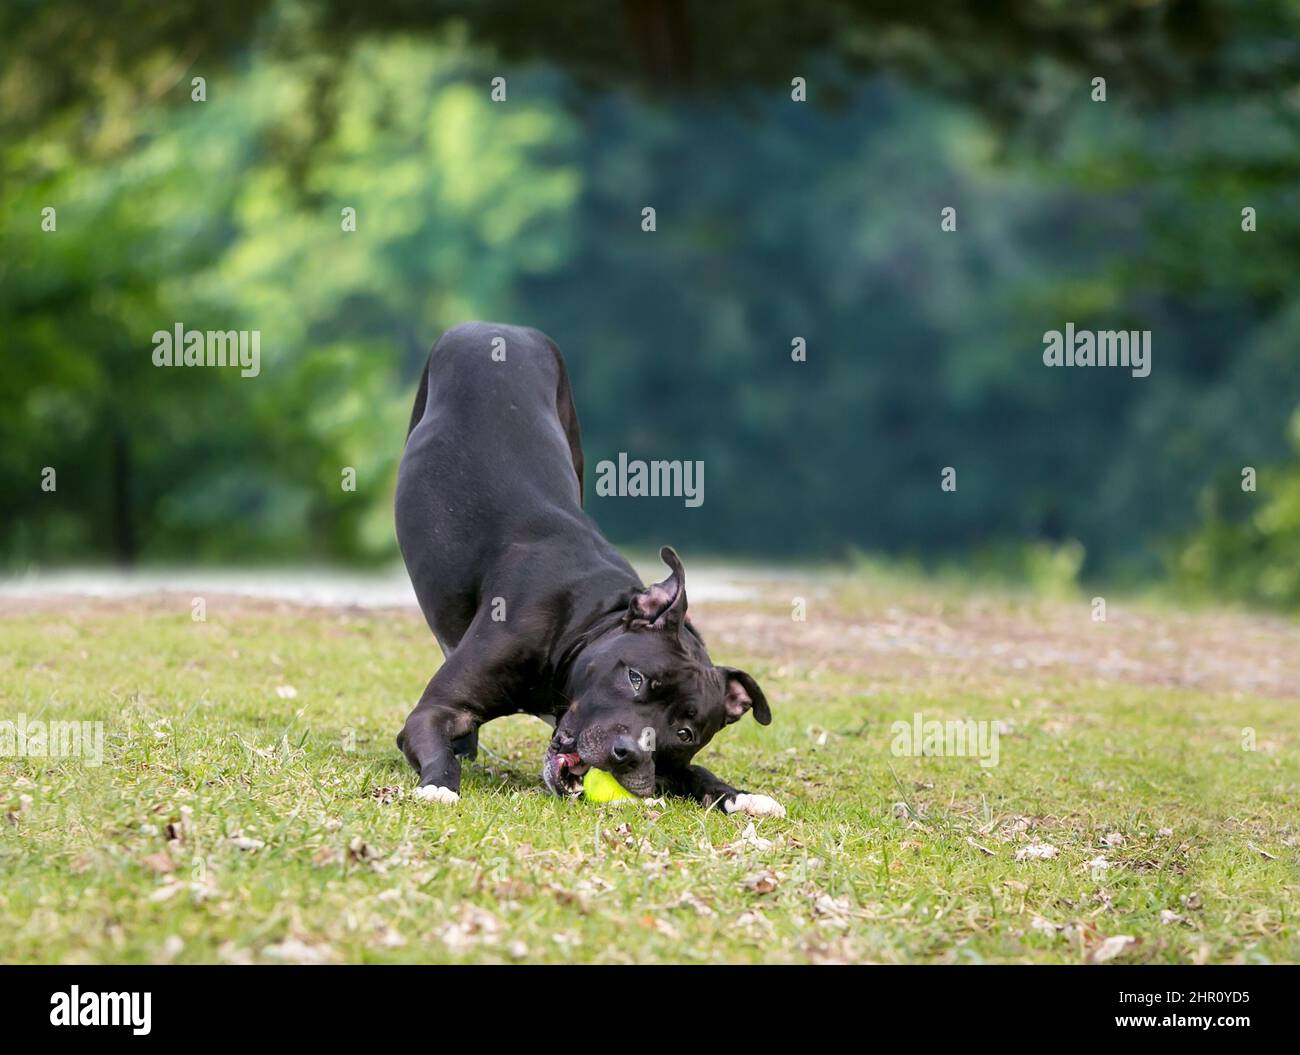 Un perro negro de raza mixta Pit Bull Terrier masticando en una bola en una posición de arco de juego Foto de stock